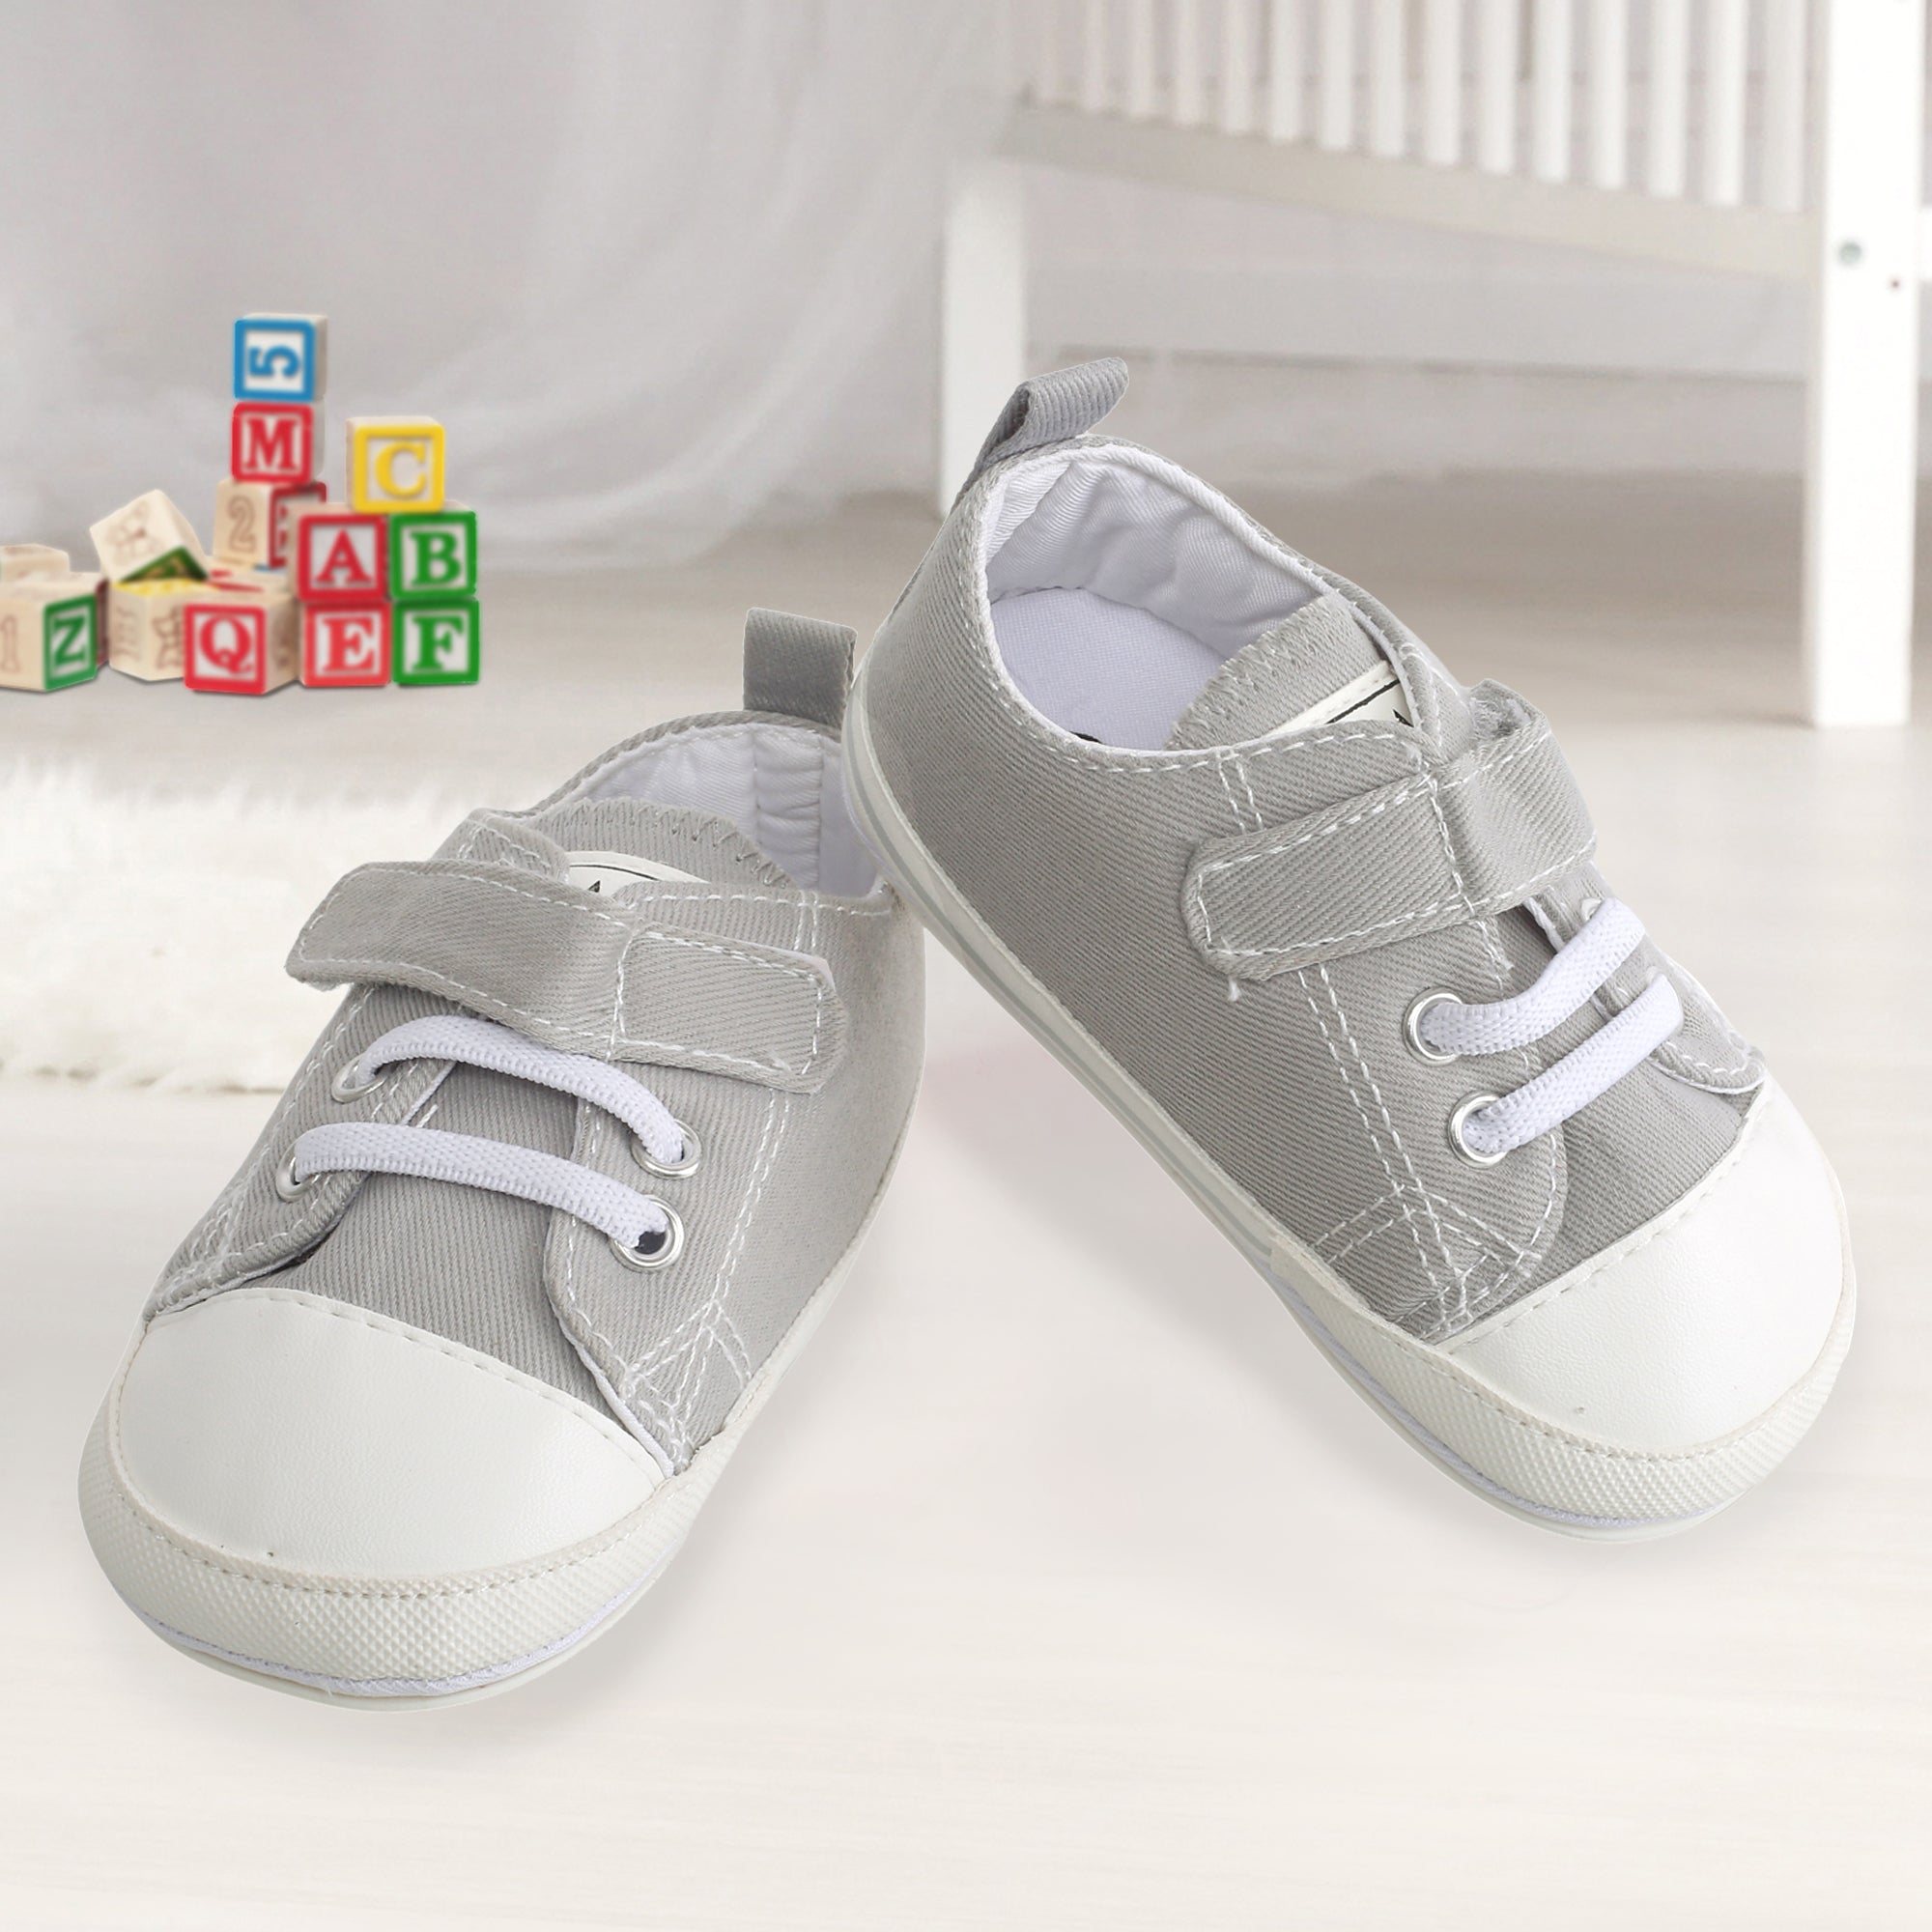 Baby Moo Grey Velcro Sneakers - Baby Moo